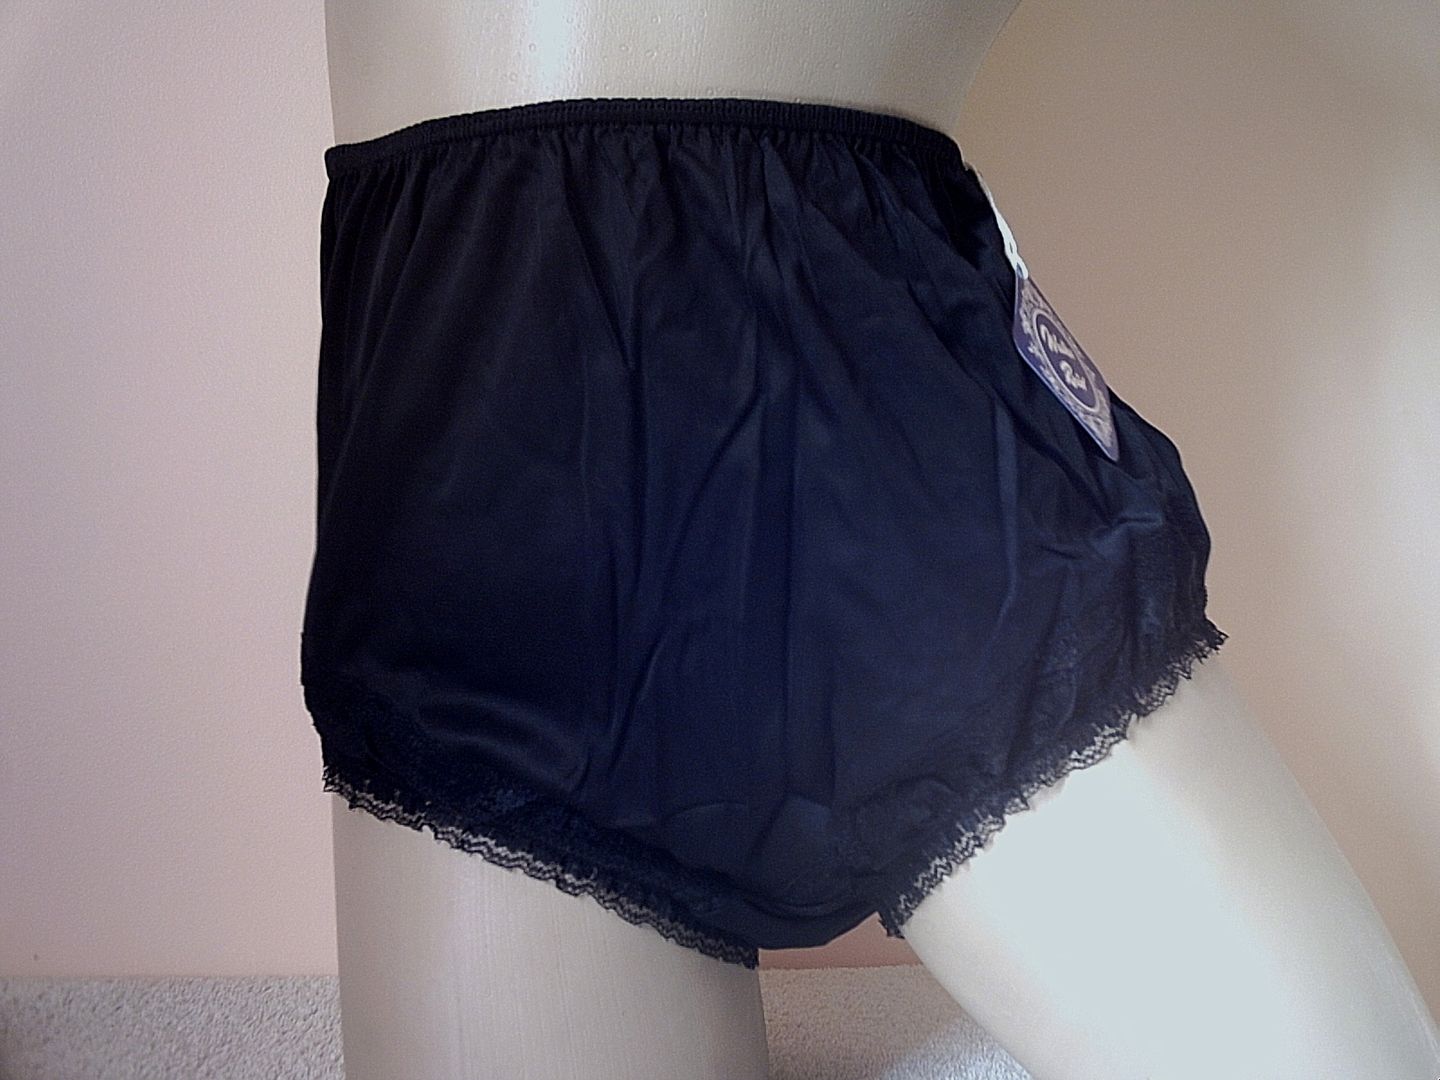 Walker Reid Black Frilly Vintage Panties Photo By Drvildo Photobucket